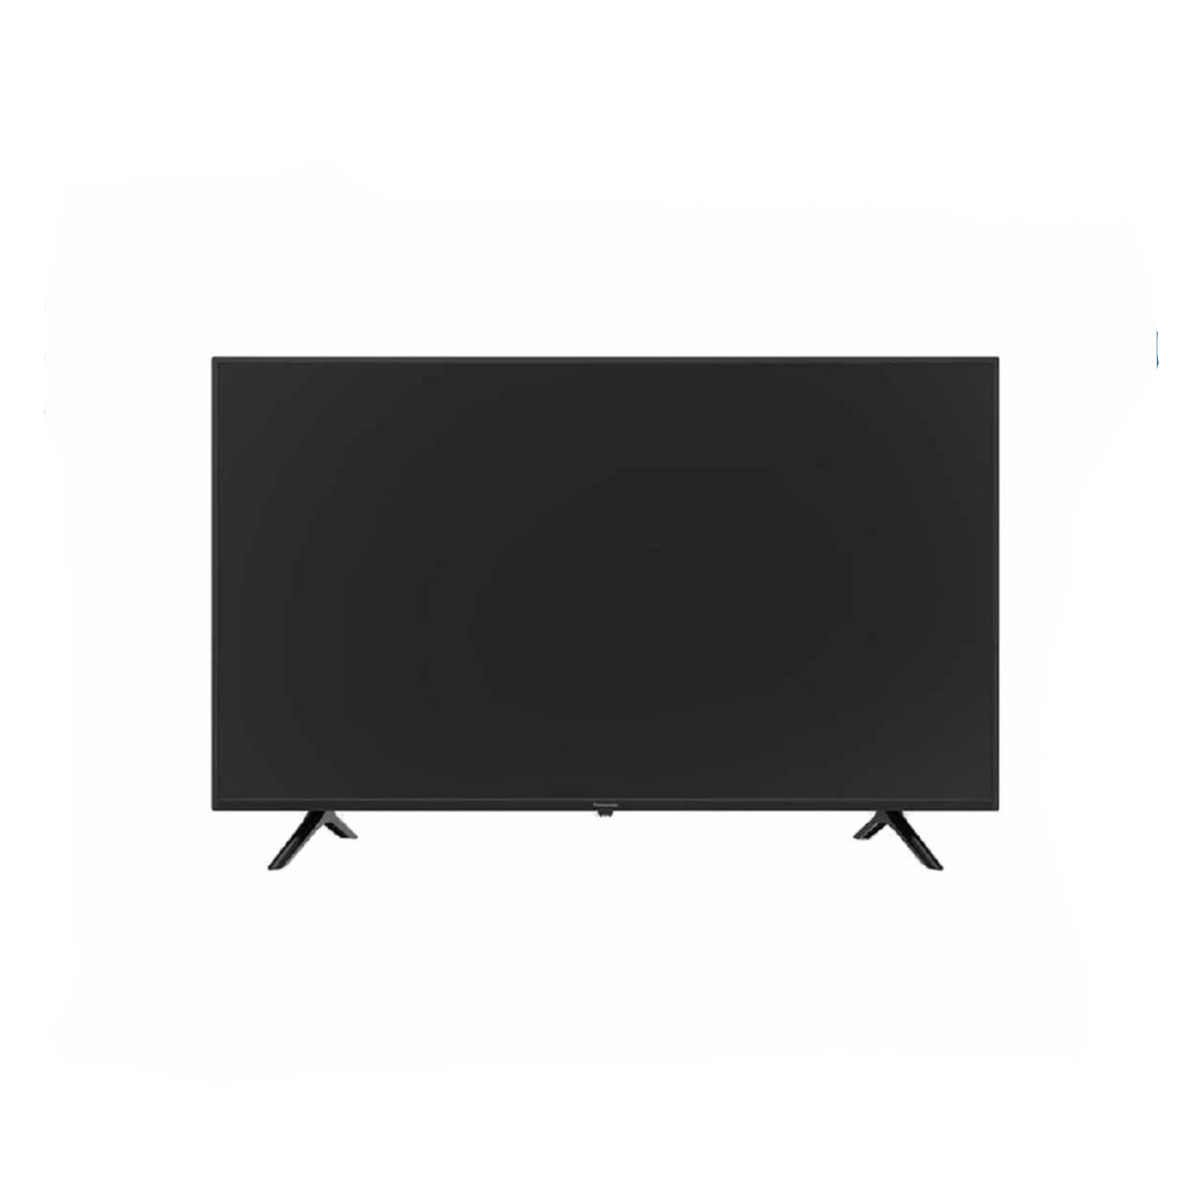 Panasonic Smart LED TV TH 43HX600G 43 inch